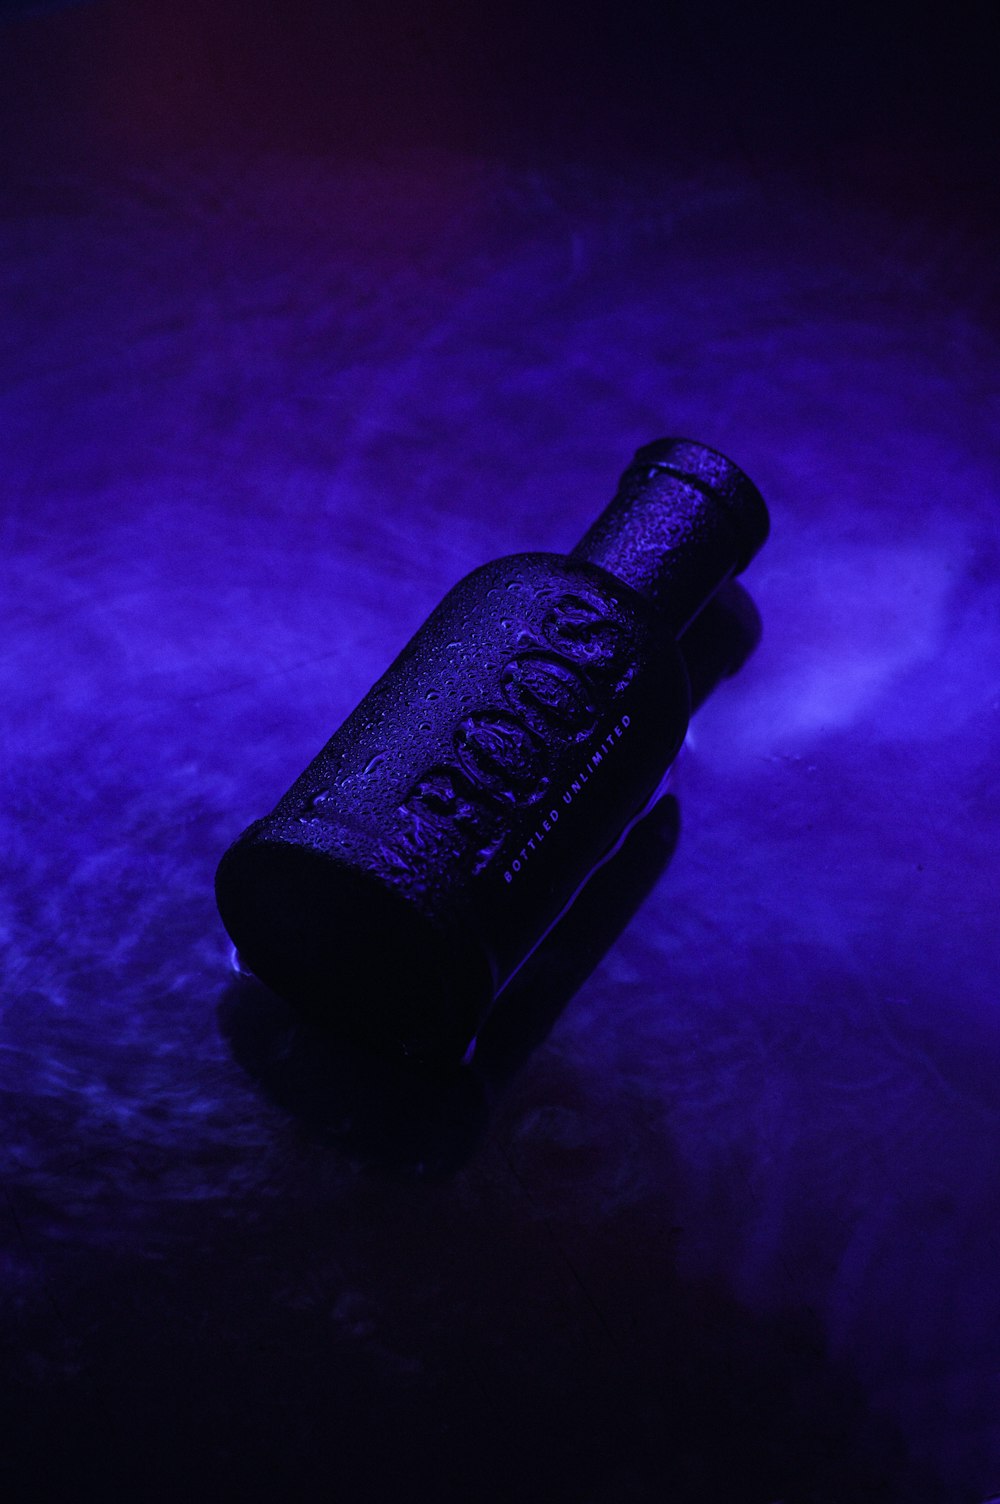 black metal pipe on purple textile